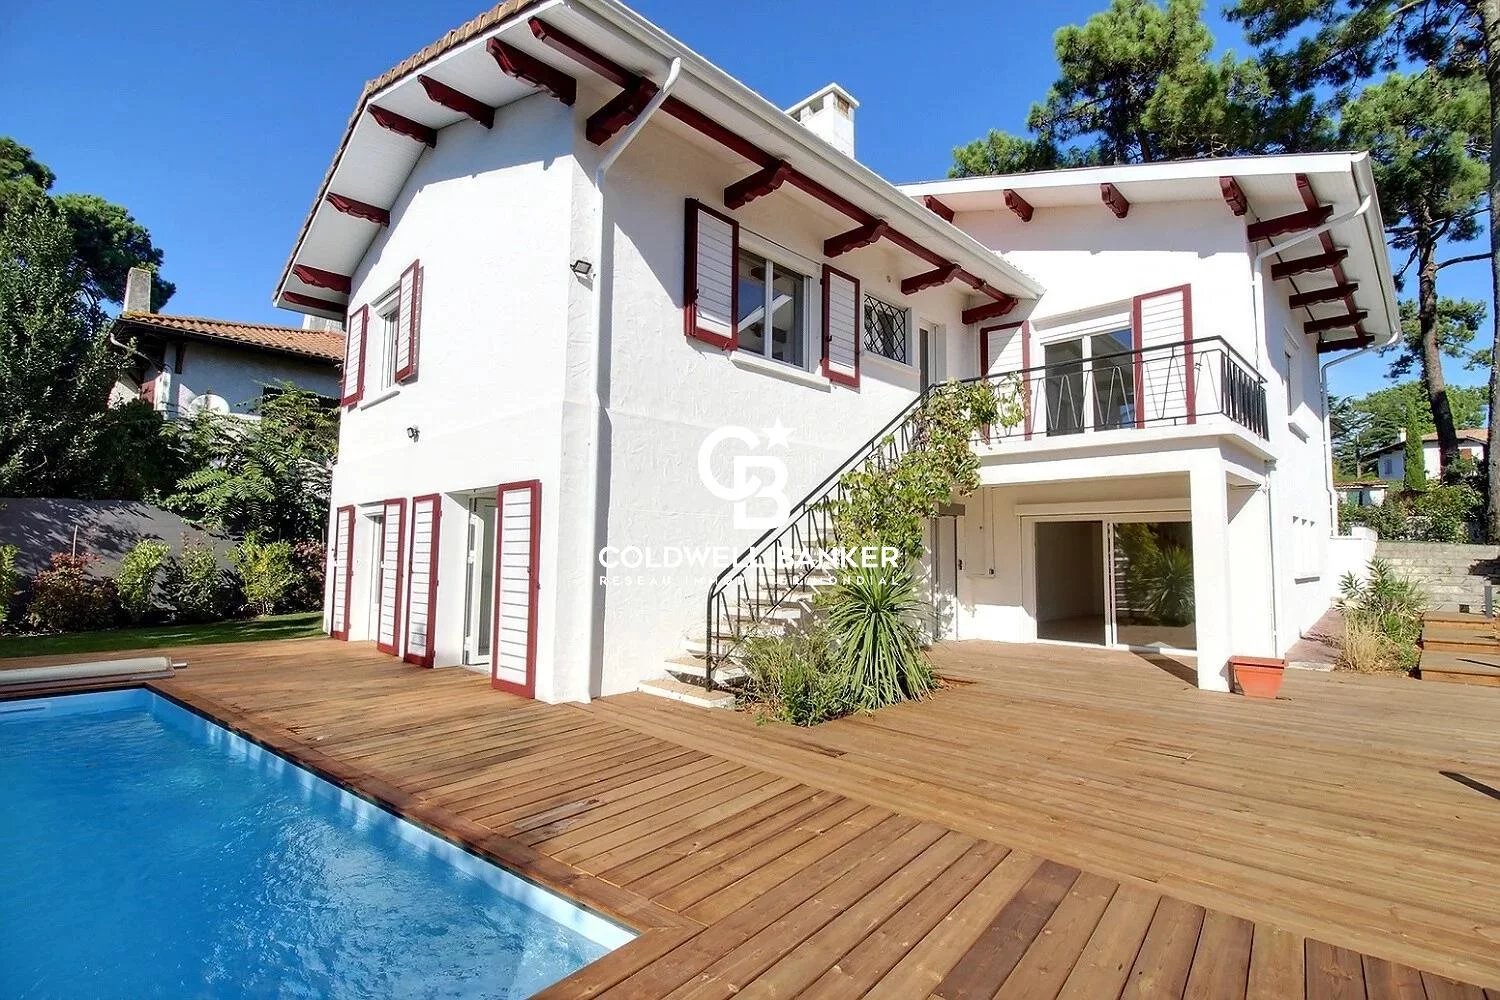 ABATILLES - Villa rénovée 210m² - Jardin paysagé et piscine